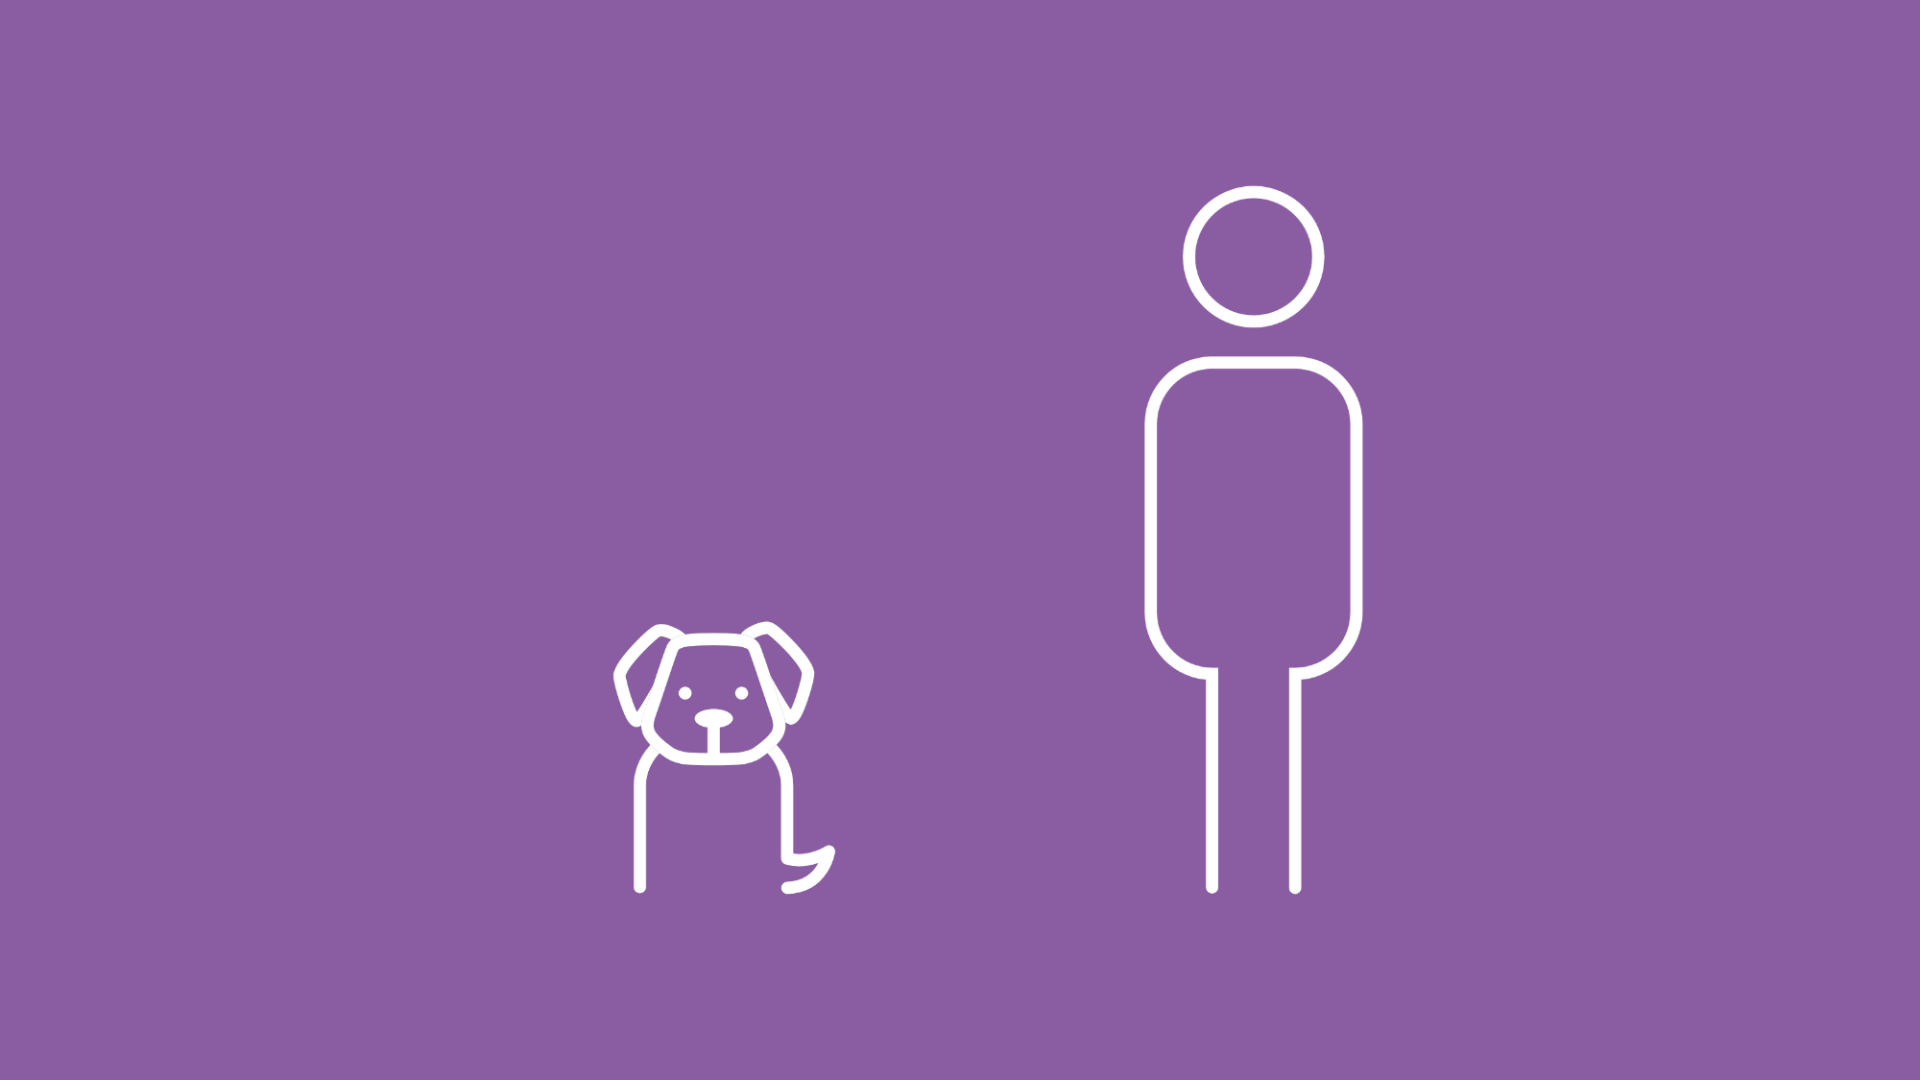 Die Grafik zeigt einen Hund mit seinem menschlichen Rudel-Mitglied.